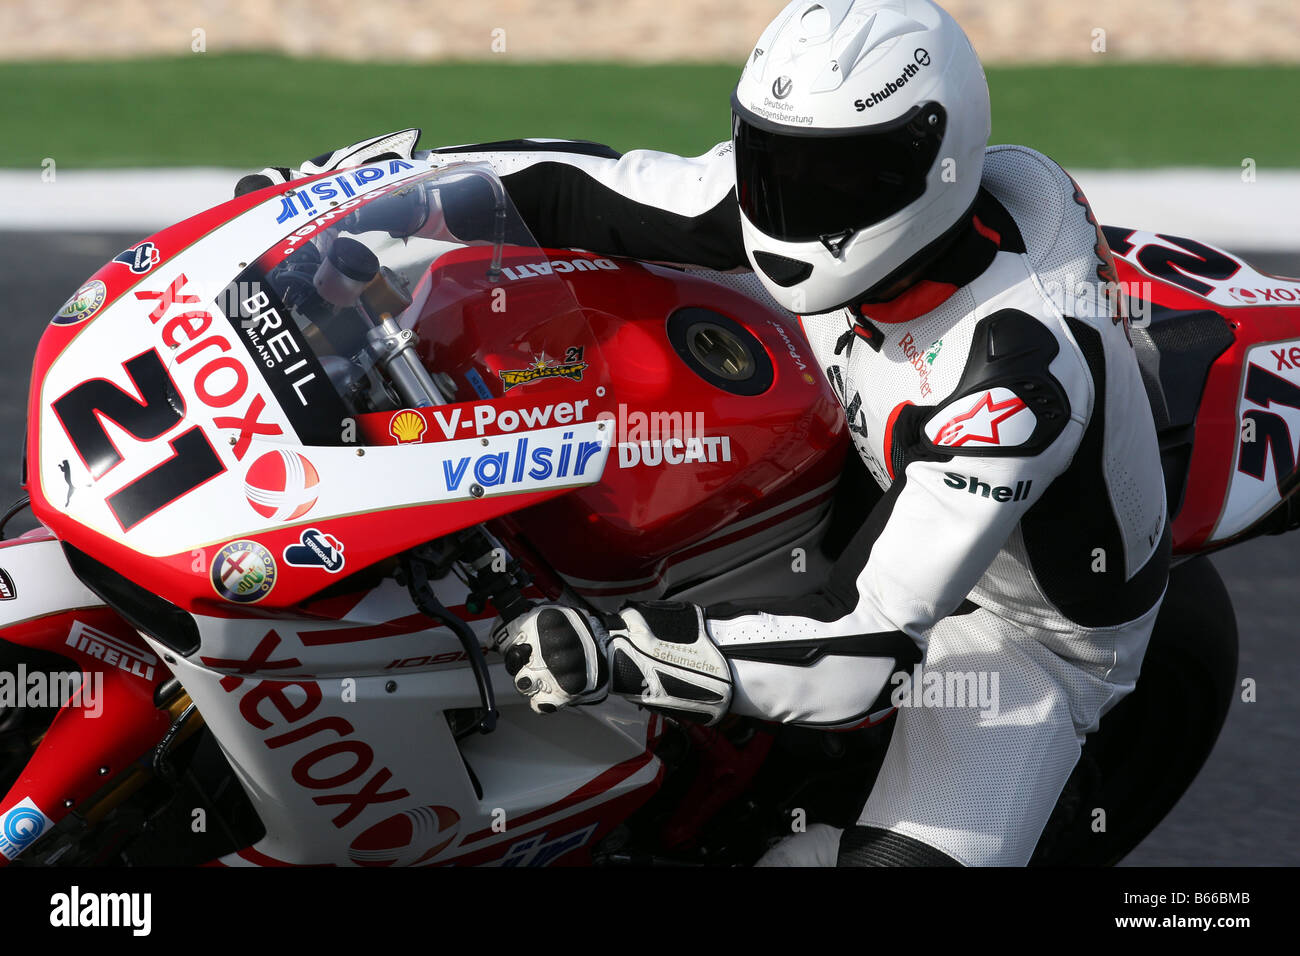 Michael Schumacher Reiten troy Bayliss 2008 Superbike Meisterschaft Weltmaschine in Portugal, Algarve-Schaltung Stockfoto